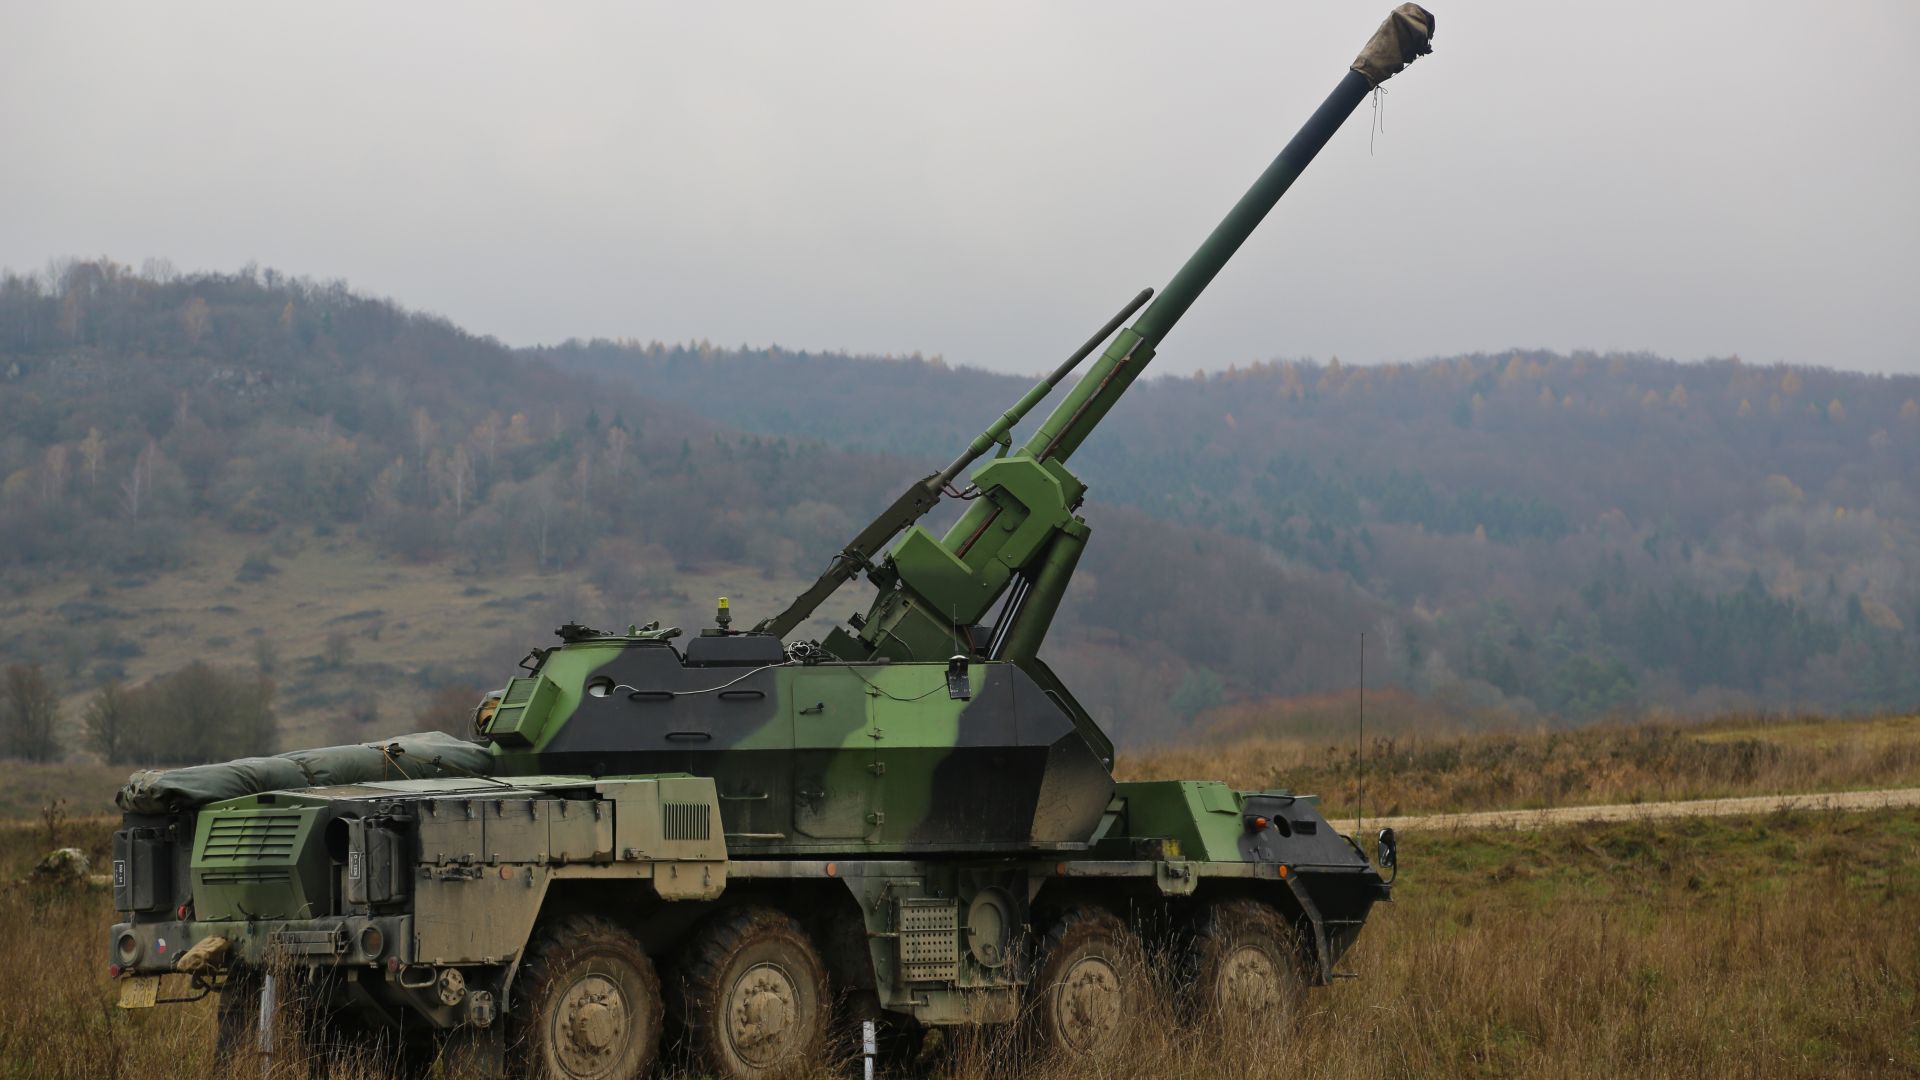 vz.77 Дана, самоходная артиллерийская установка, Армия Чешской республики, vz.77 DANA, self-propelled auto-loading gun, Military of the Czech Republic (horizontal)